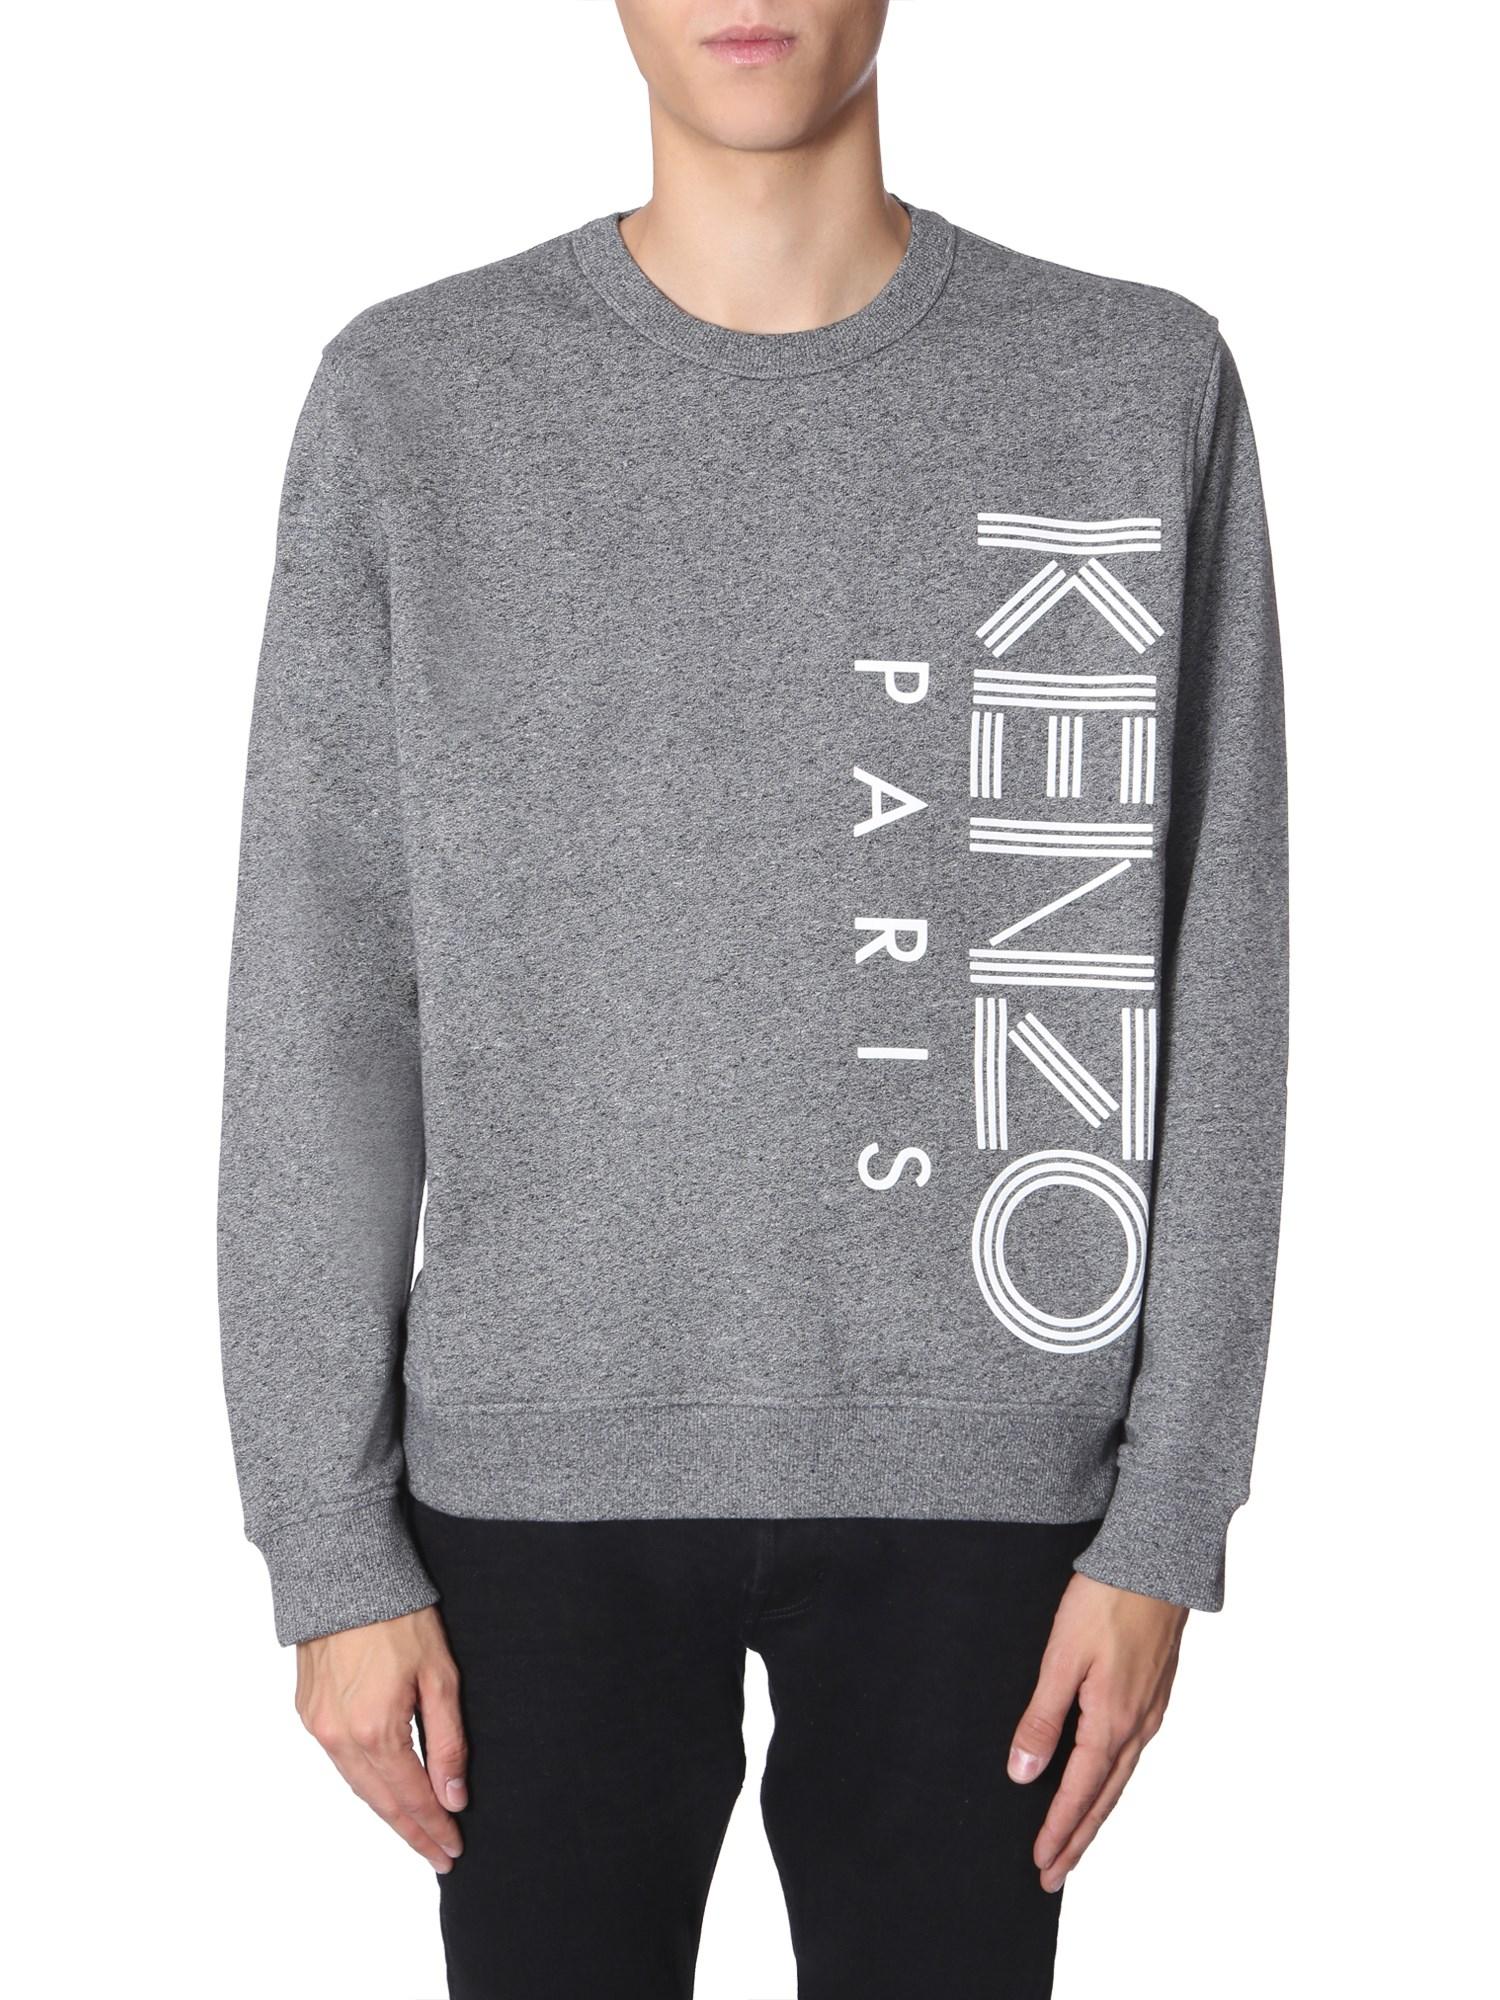 KENZO Crew Neck Sweatshirt in Charcoal (Gray) for Men - Lyst